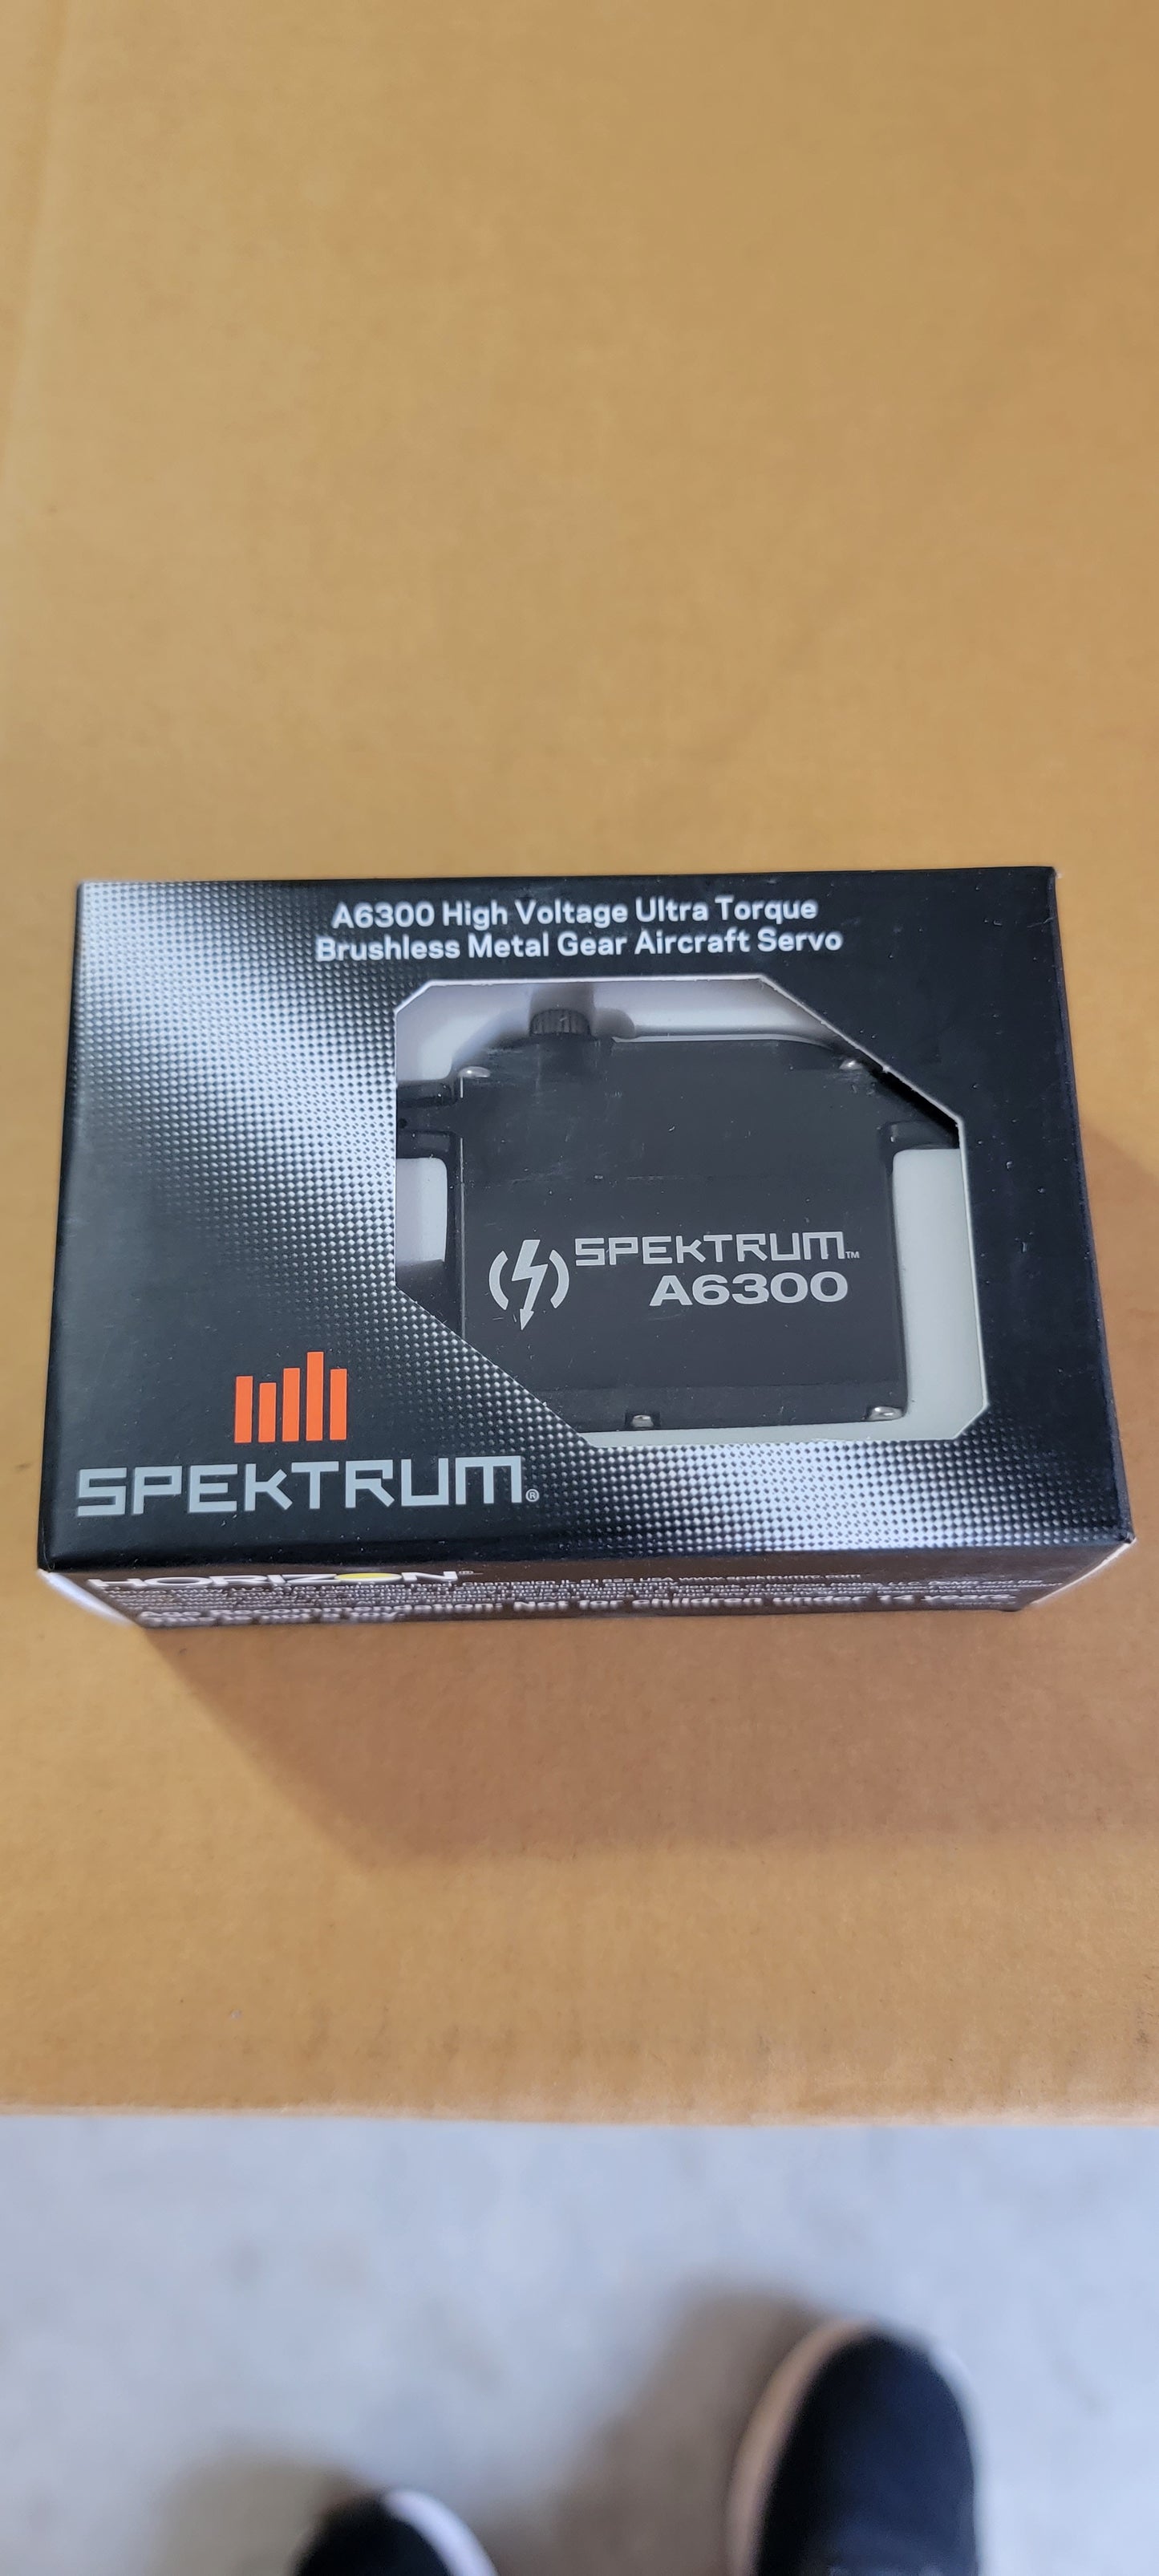 Spektrum A6300 Ultra Torque High Speed Metal BL HV Servo